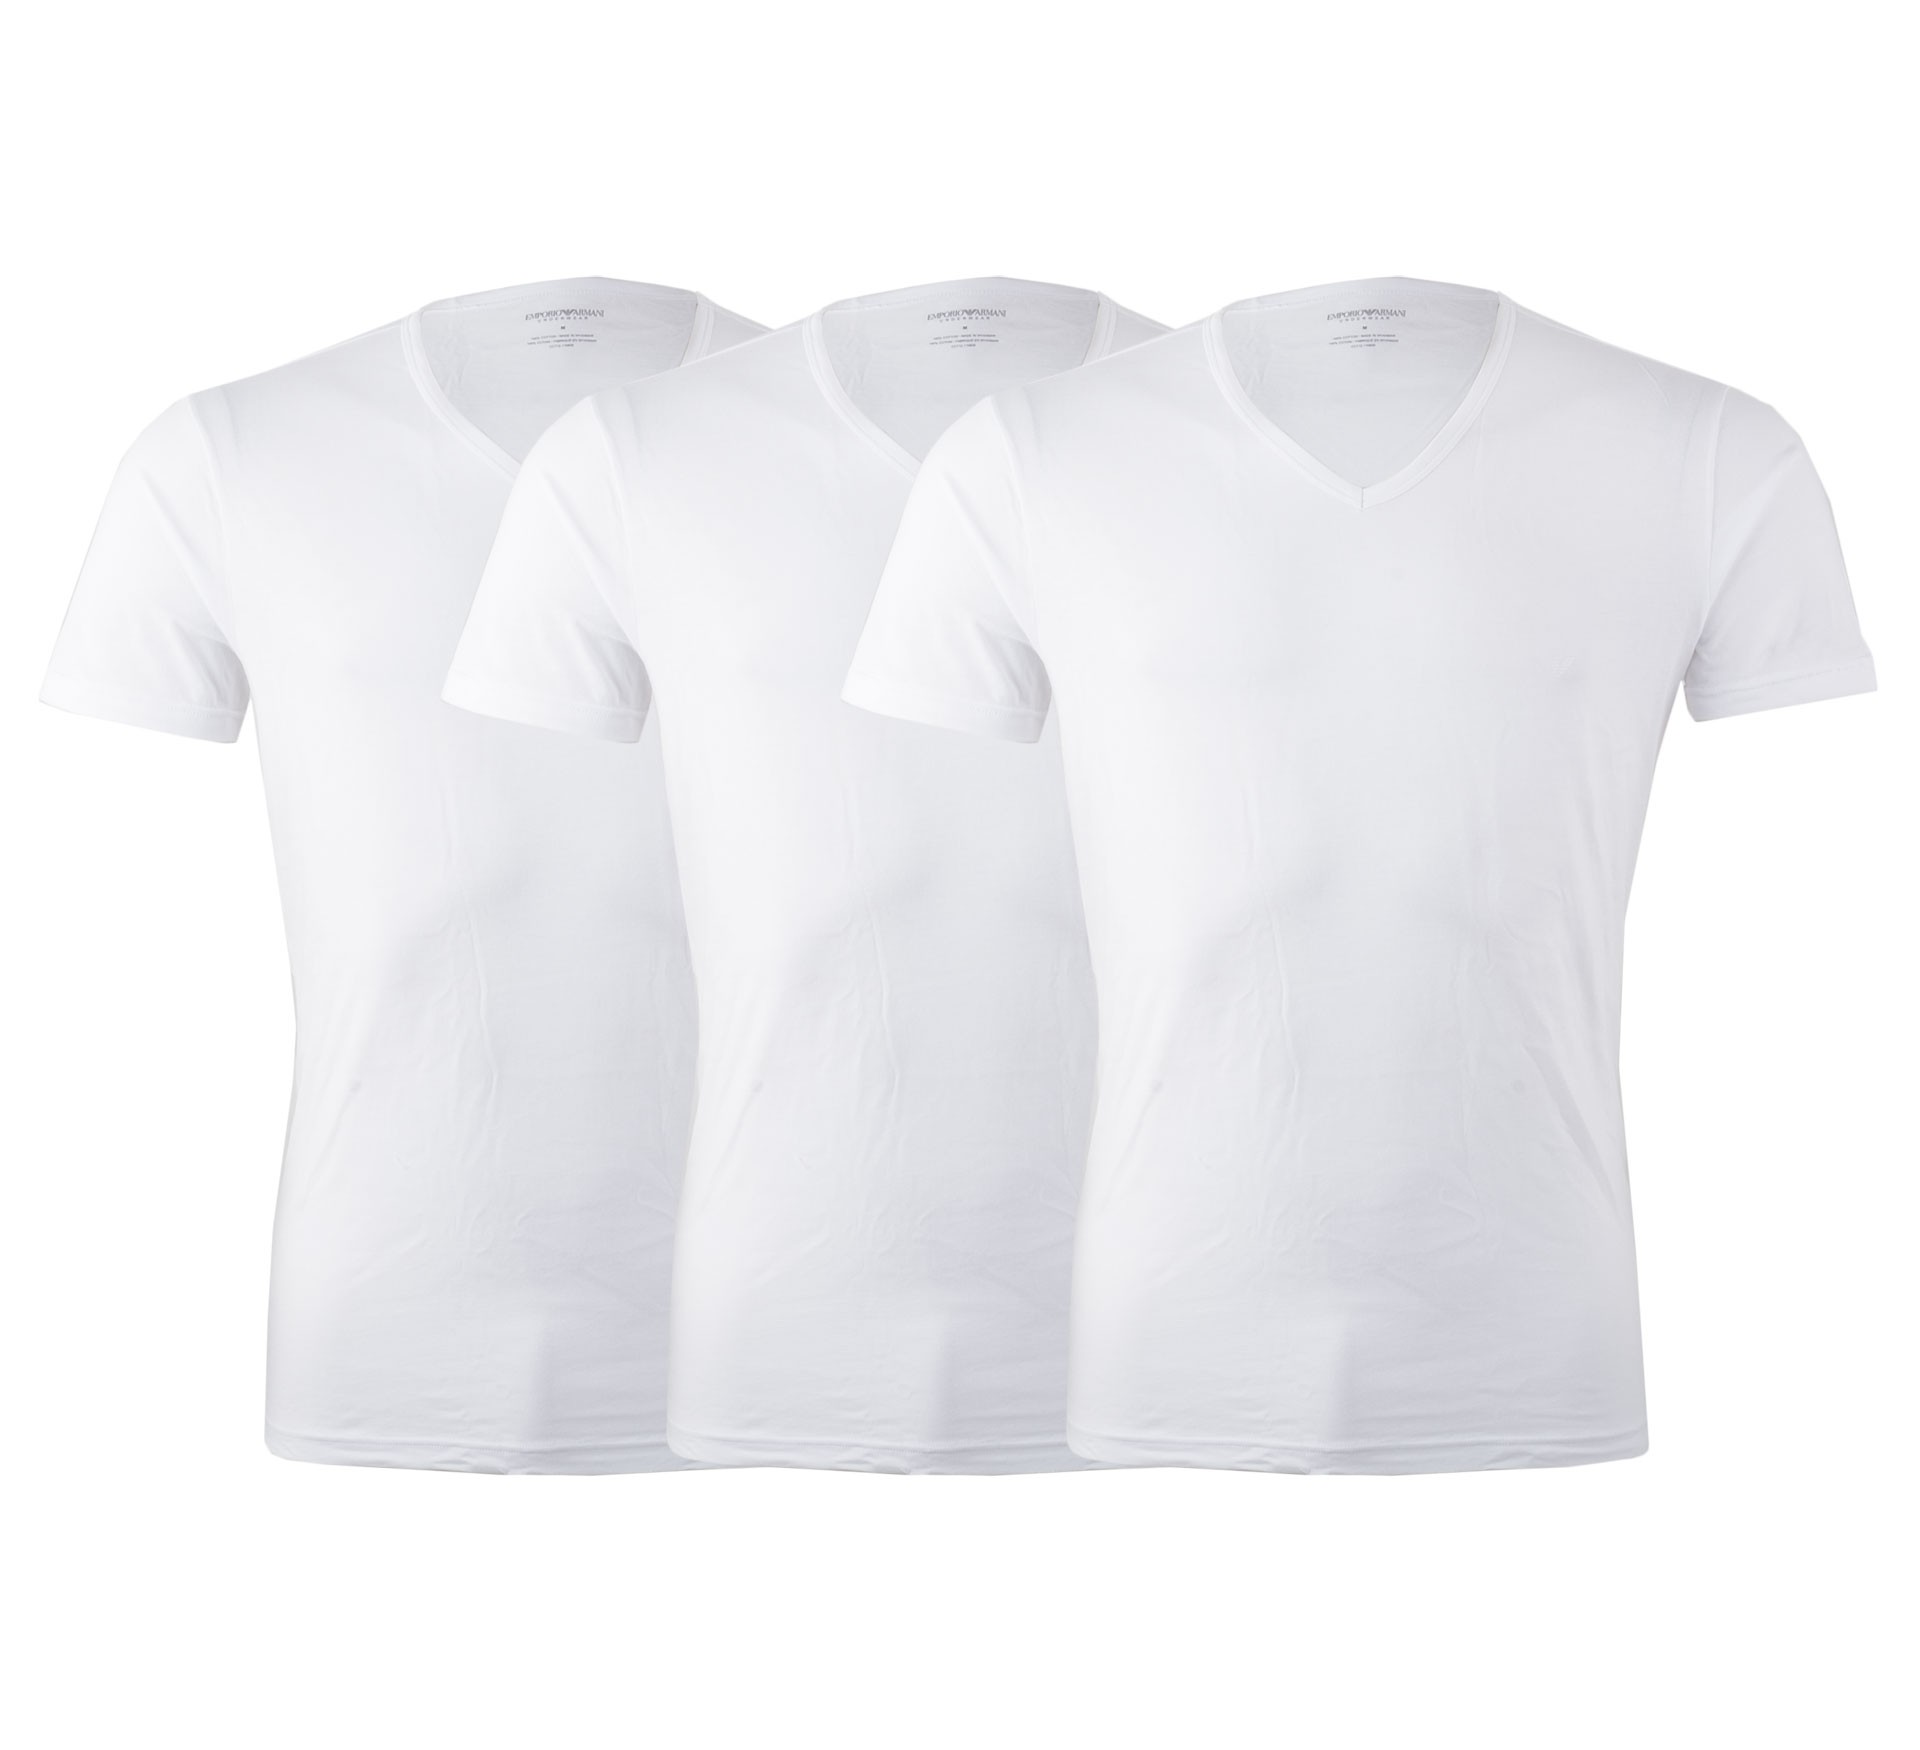 Plutosport - Emporio Armani V-Neck T-shirt S/Sleeve (3-pack)